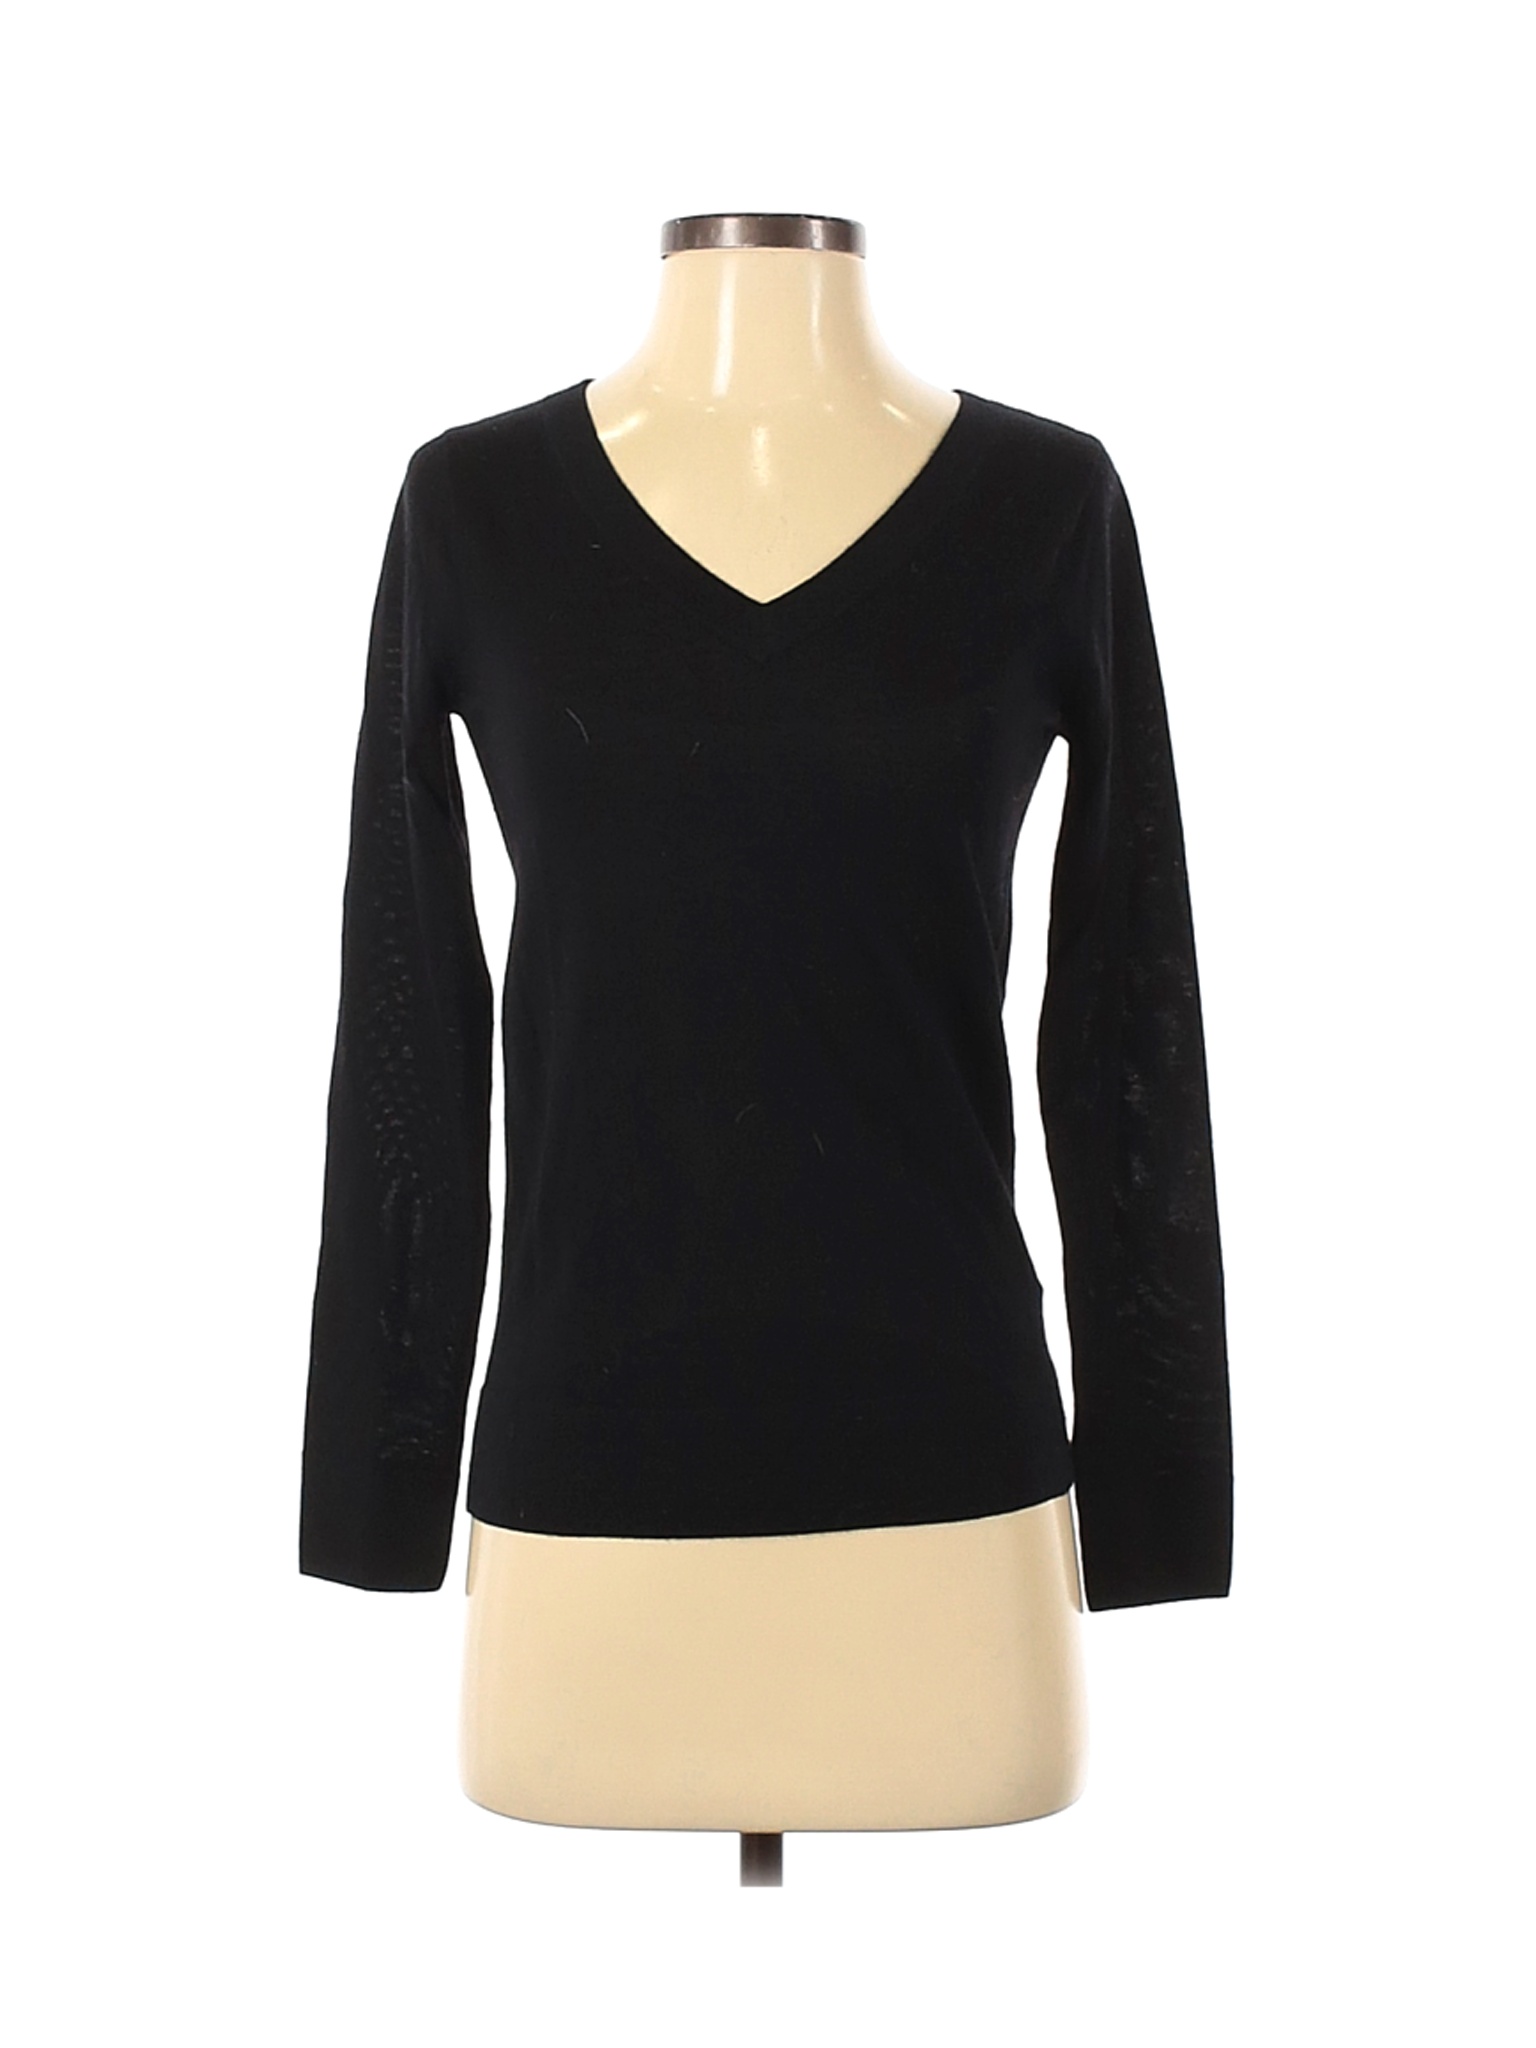 Club Monaco Women Black Wool Pullover Sweater XS | eBay